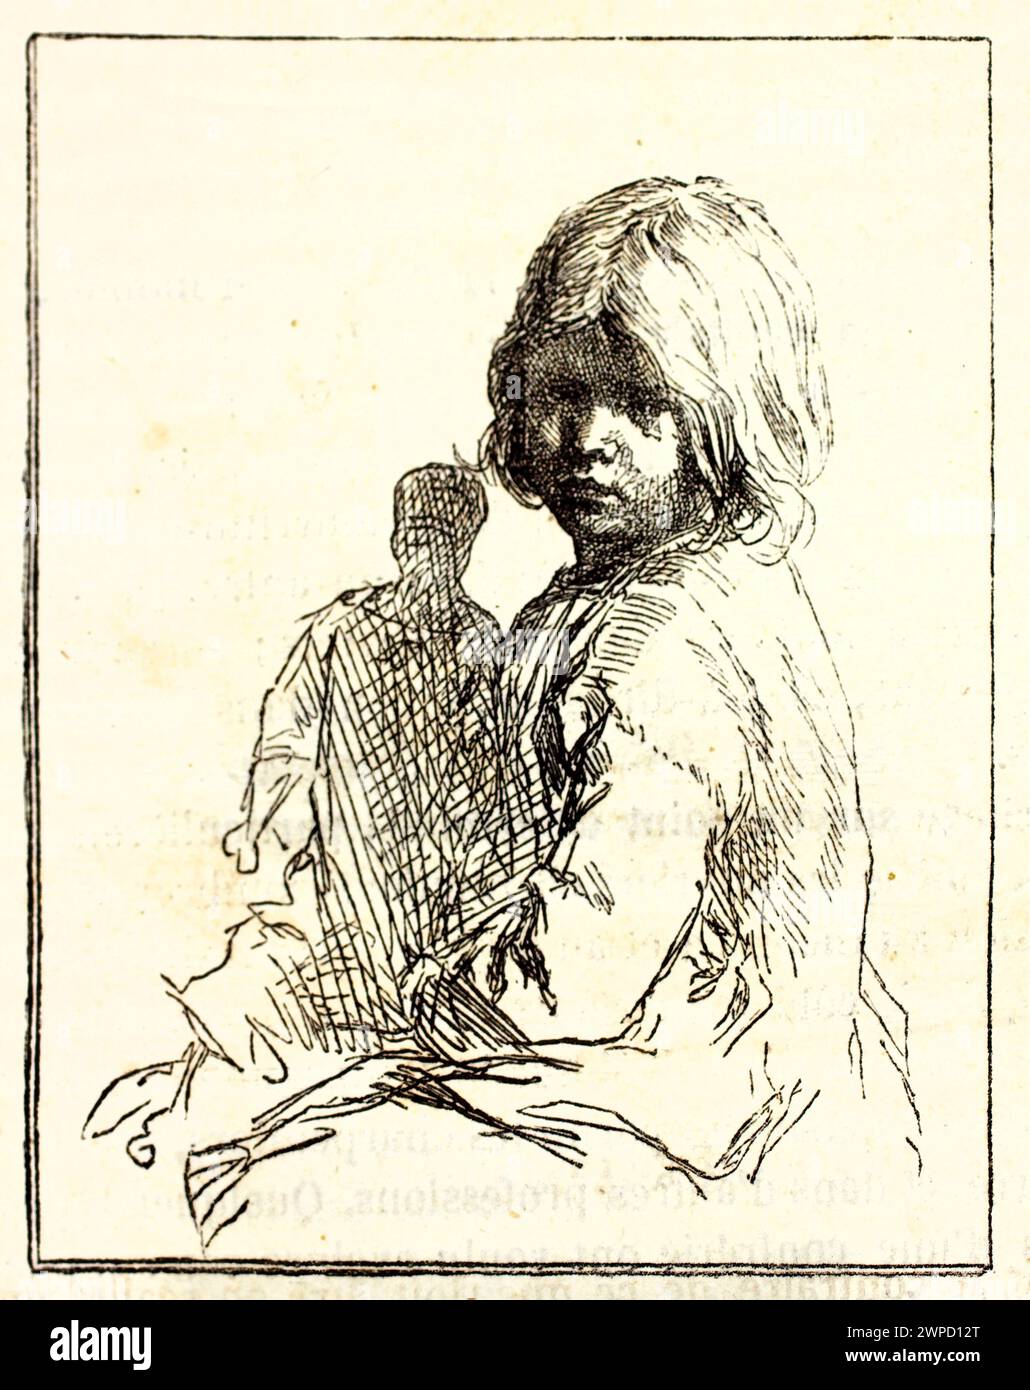 Viejo retrato grabado de una niña. Por autor desconocido, publicado en Magasin pittoresque, París, 1852 Foto de stock